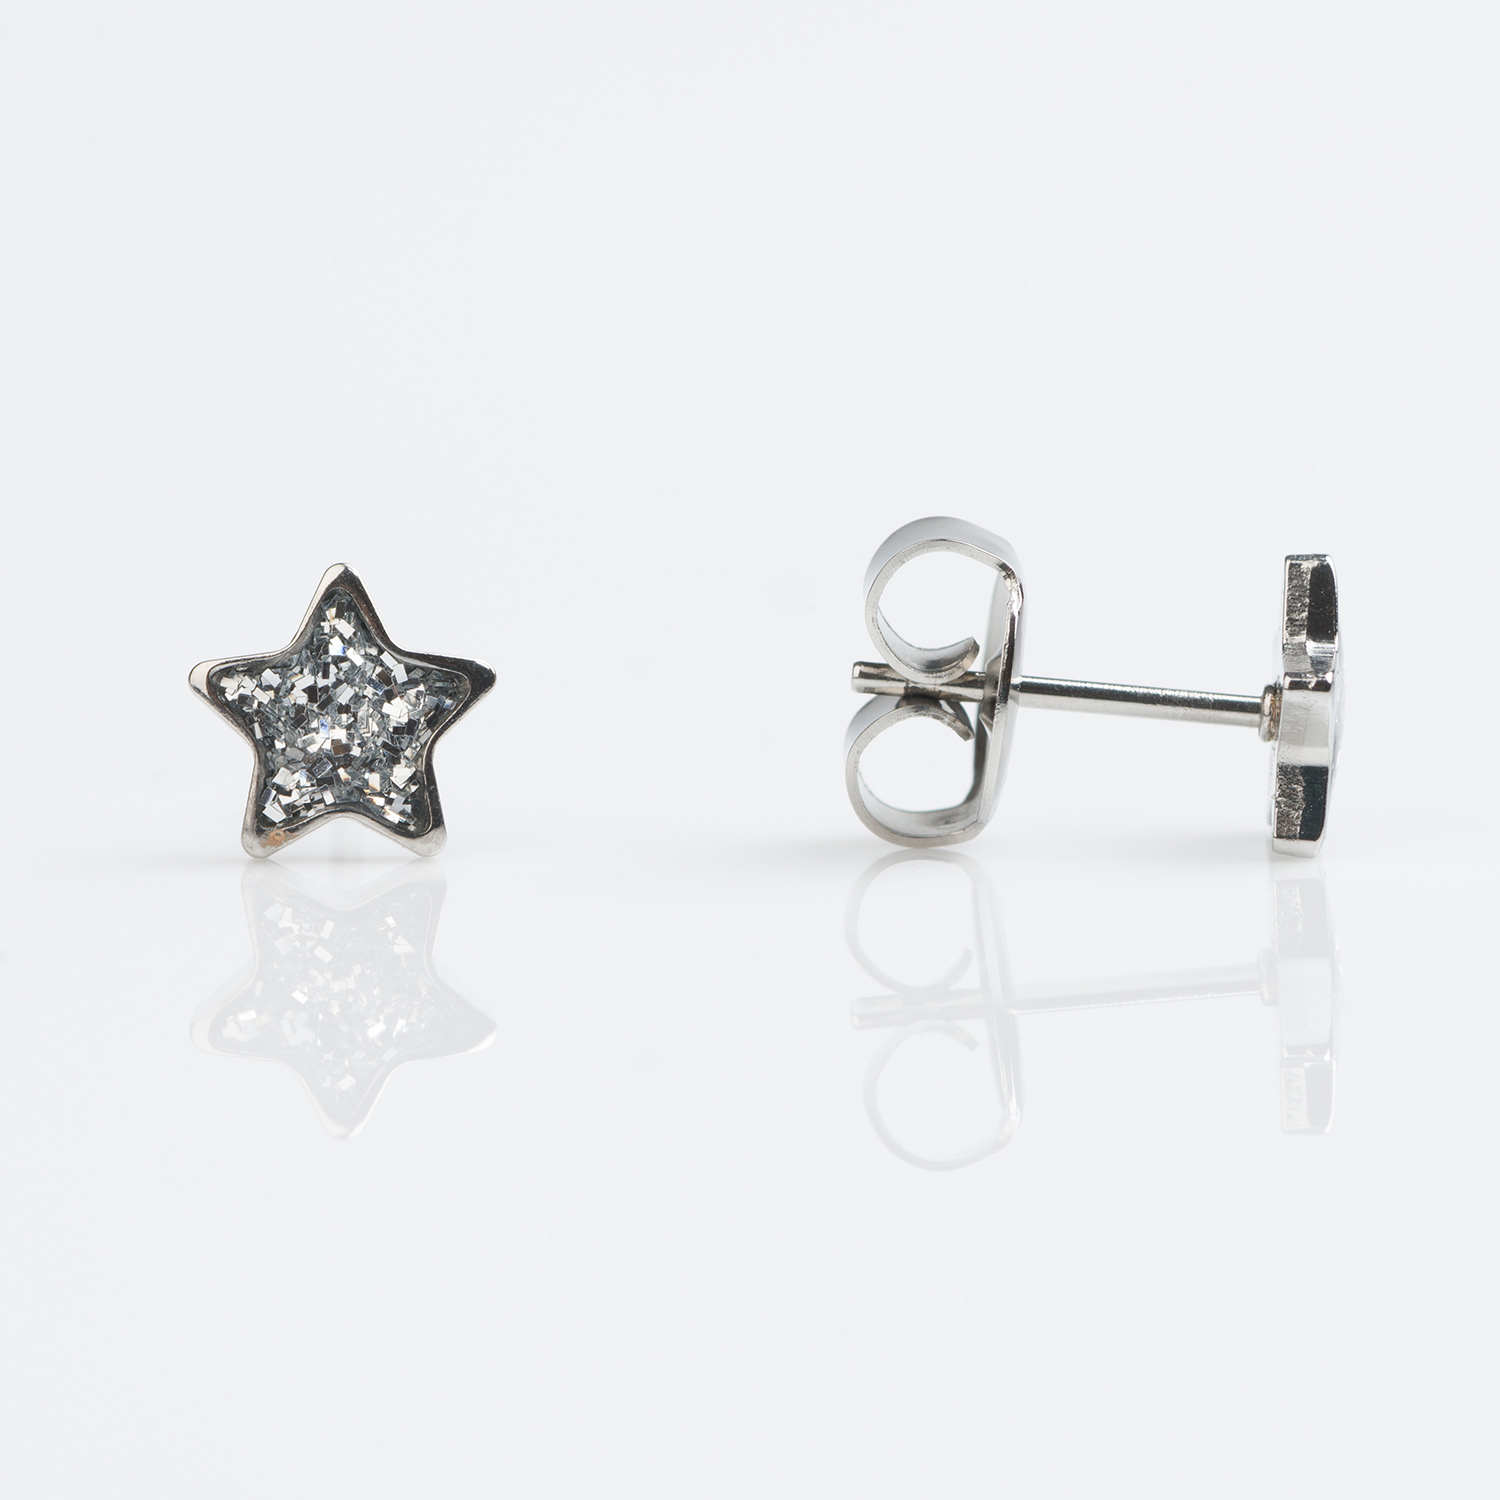 S3544WSTX – Studex Sensitive Stainless Clear Glitter Star Earrings